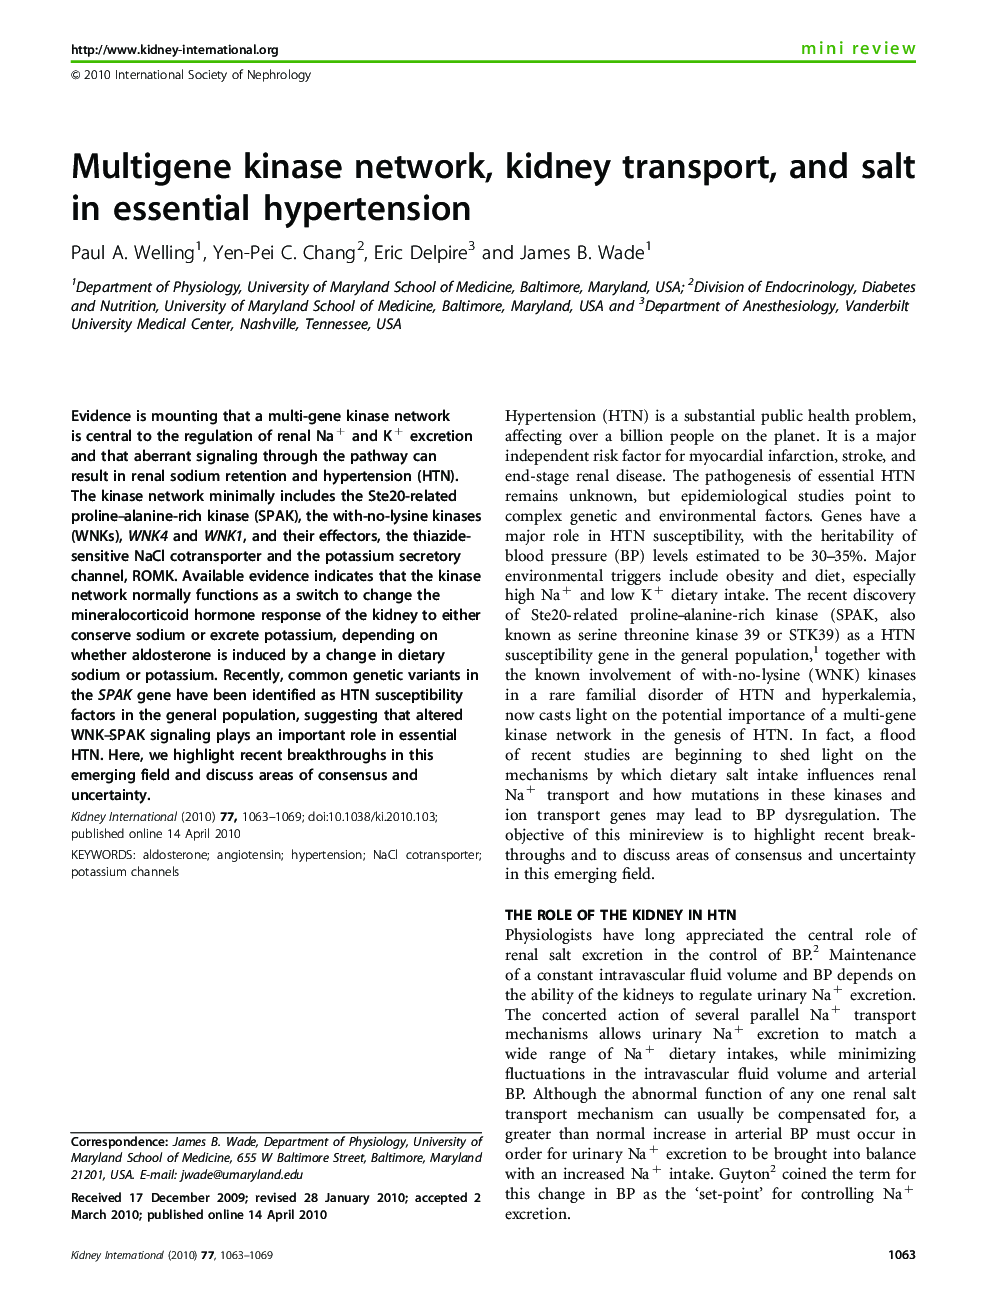 Multigene kinase network, kidney transport, and salt in essential hypertension